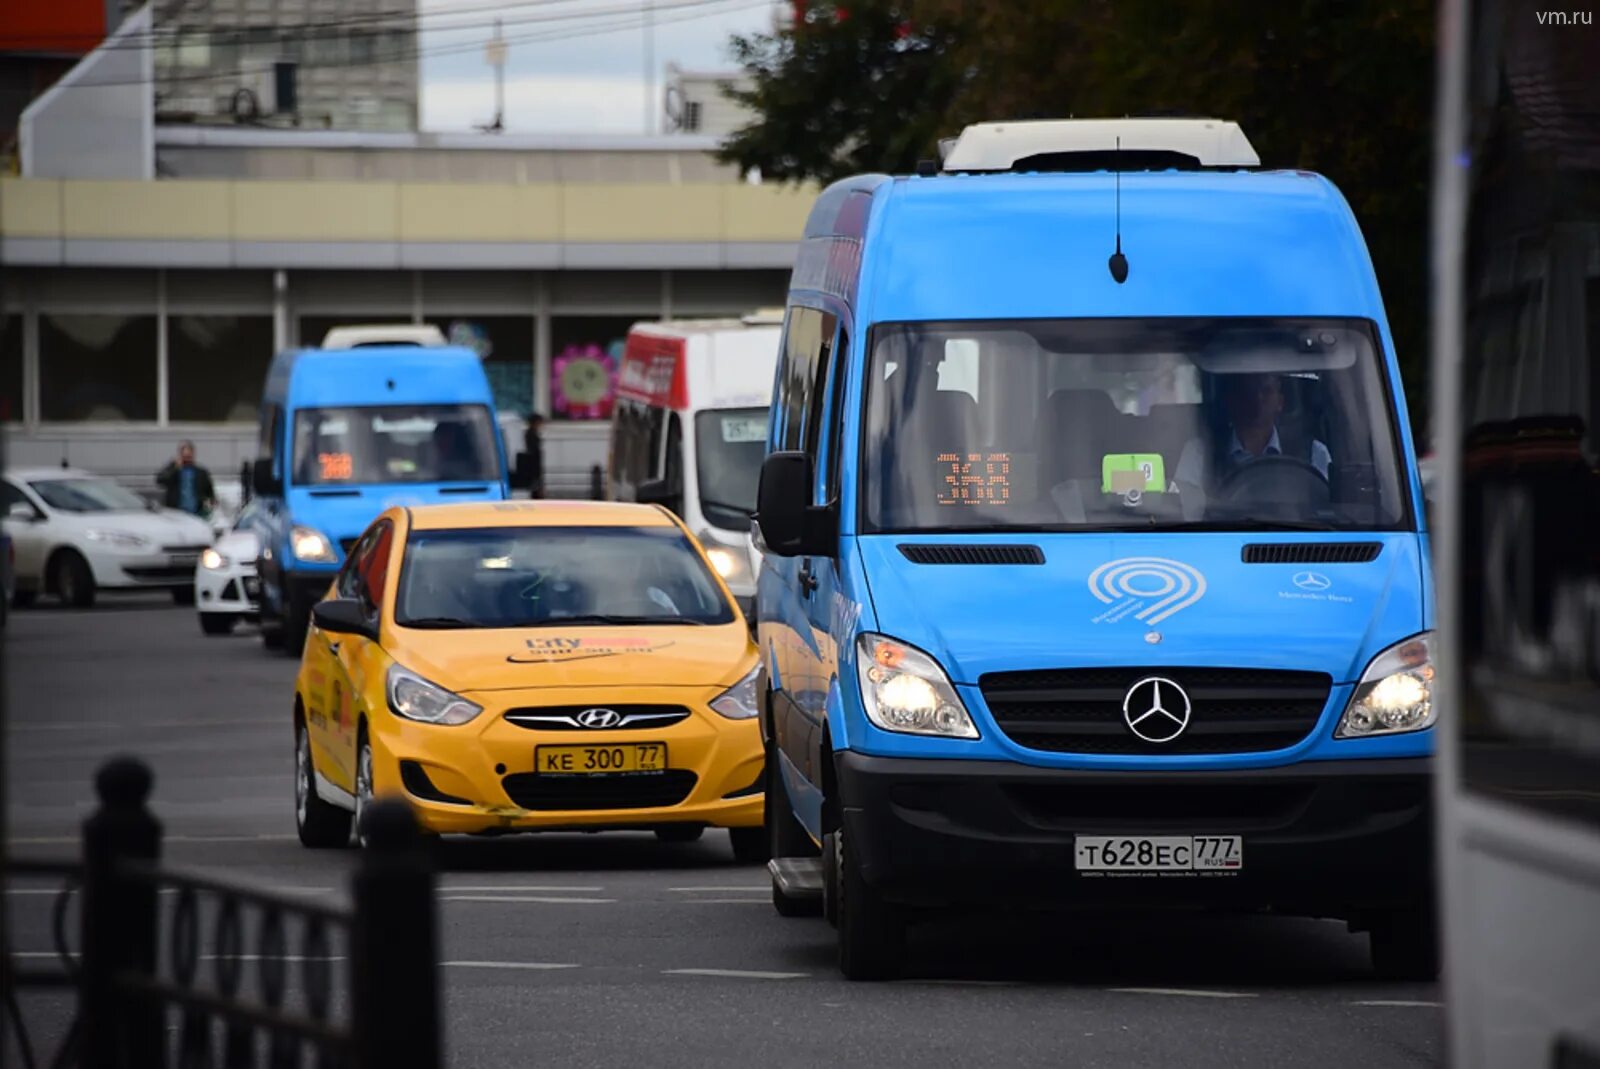 Маршрутное такси метро. Fiat Ducato автобус Мосгортранс. Общественный транспорт такси. Маршрутное такси в Москве. Автобус и автомобиль.